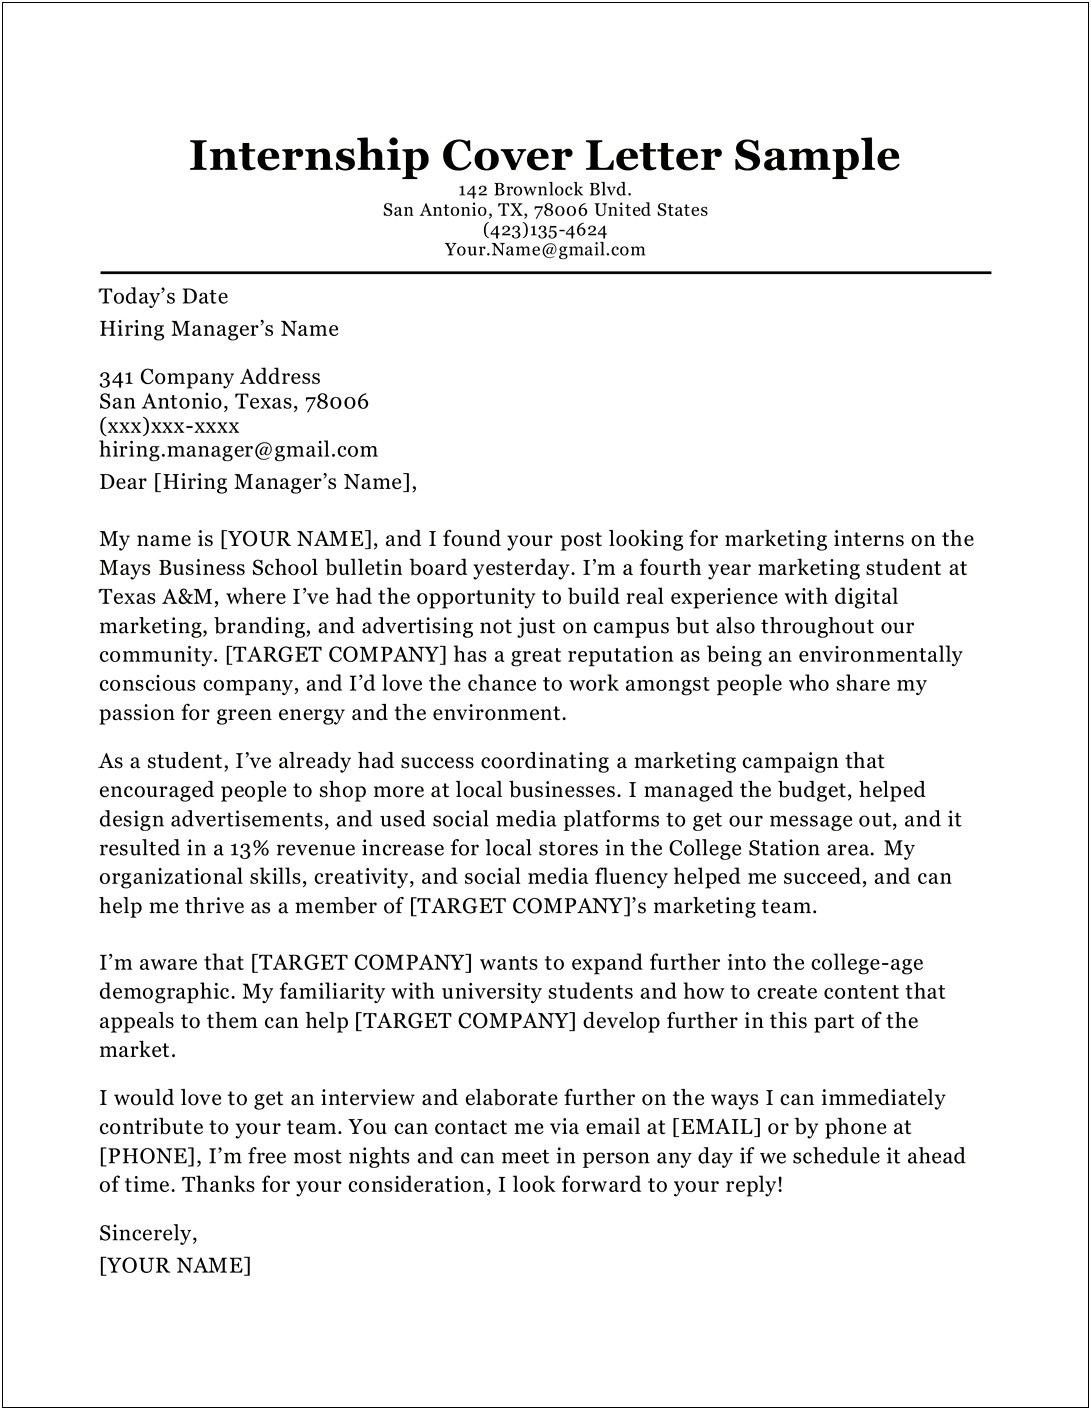 Resume Cover Letter Sample For Internship